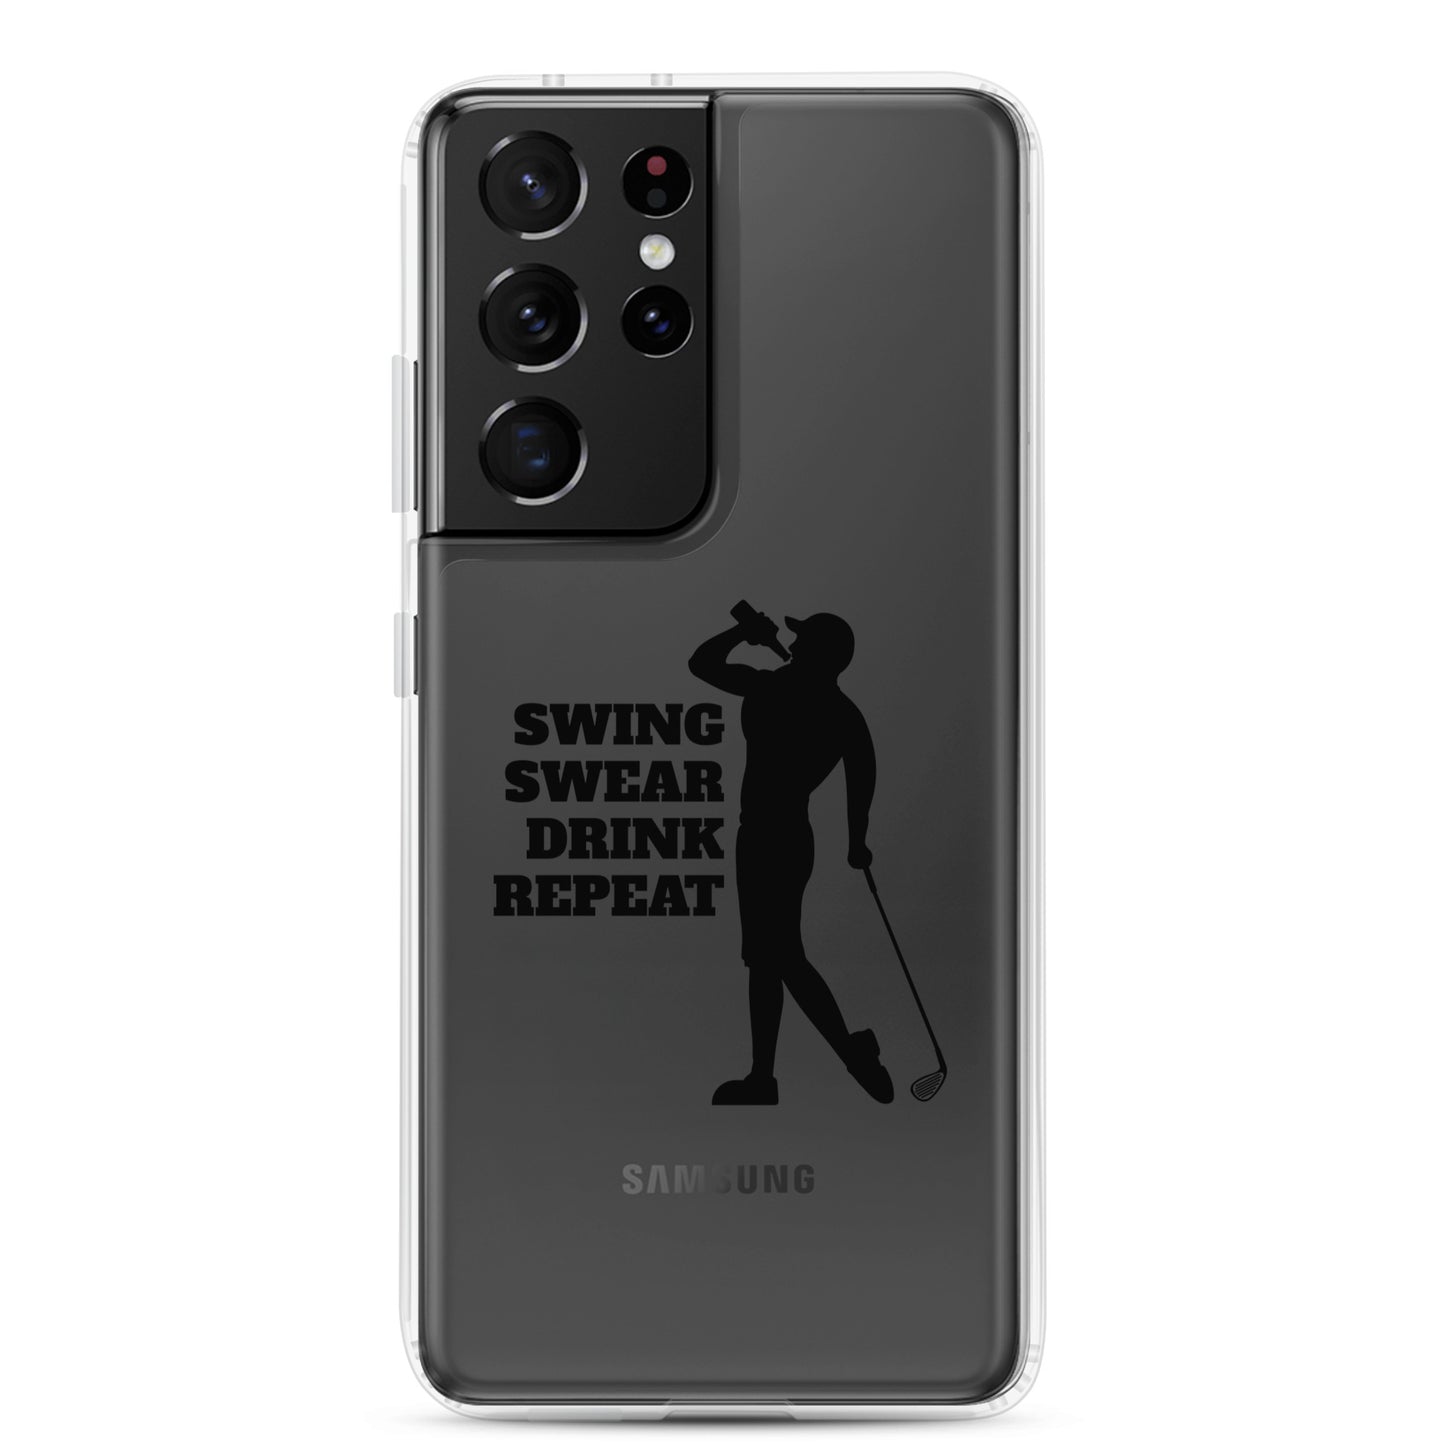 Swing, Swear, Drink, Repeat Man Samsung Case